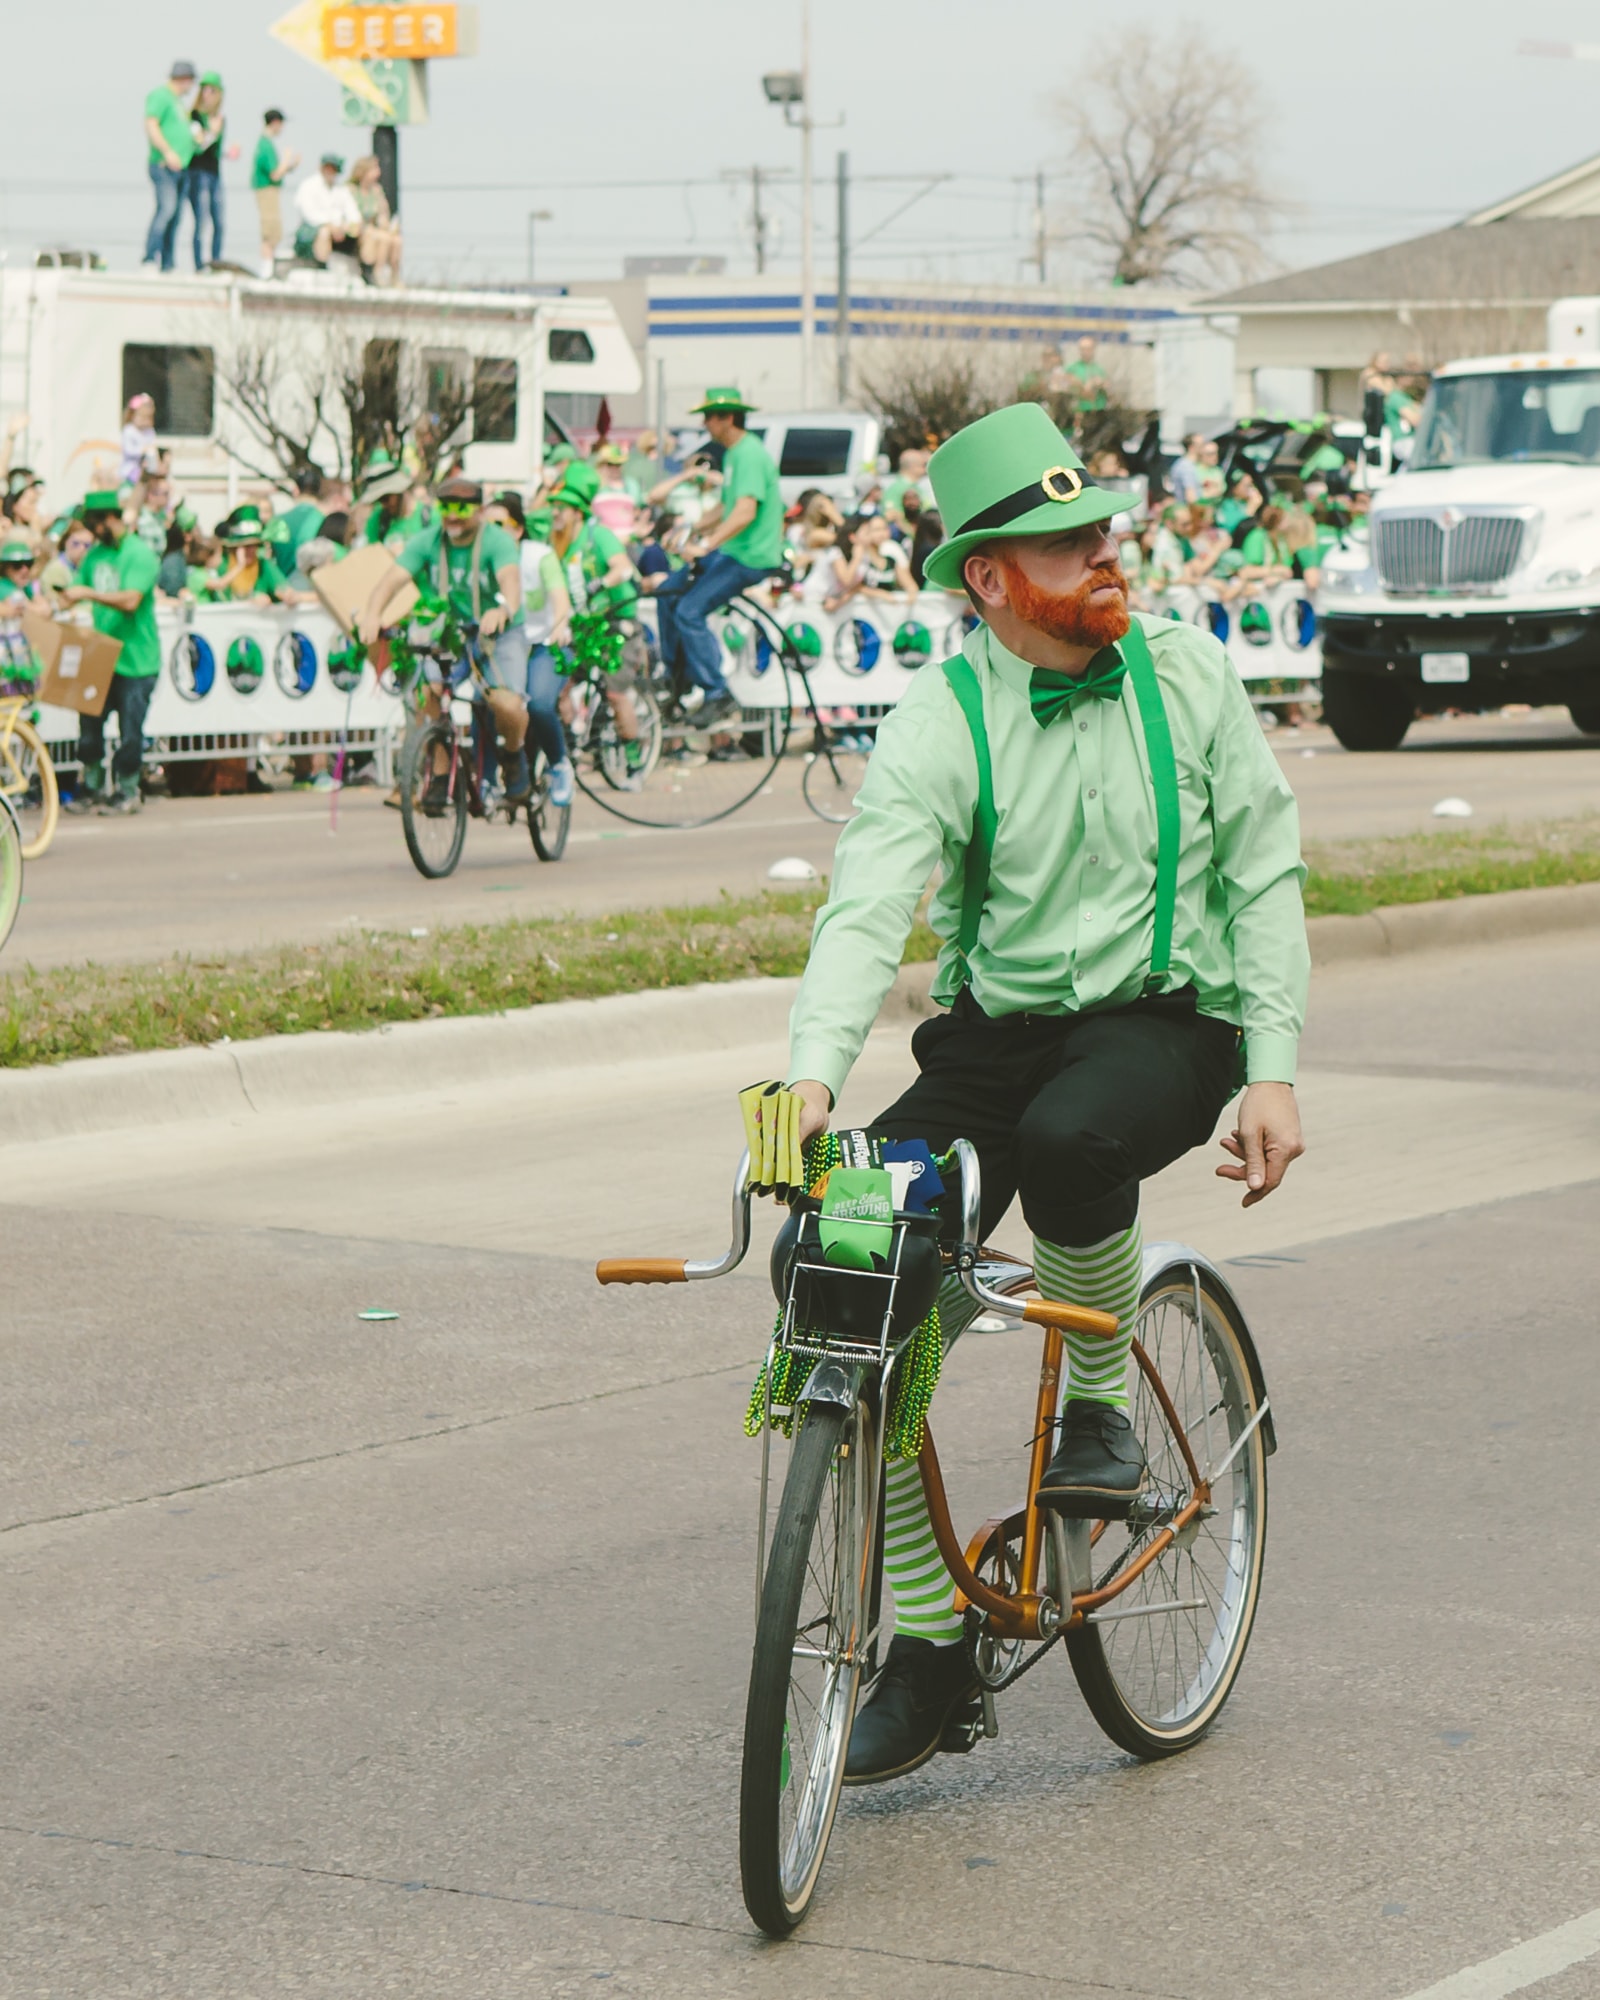 Aa leprechaun riding a bike in the parade